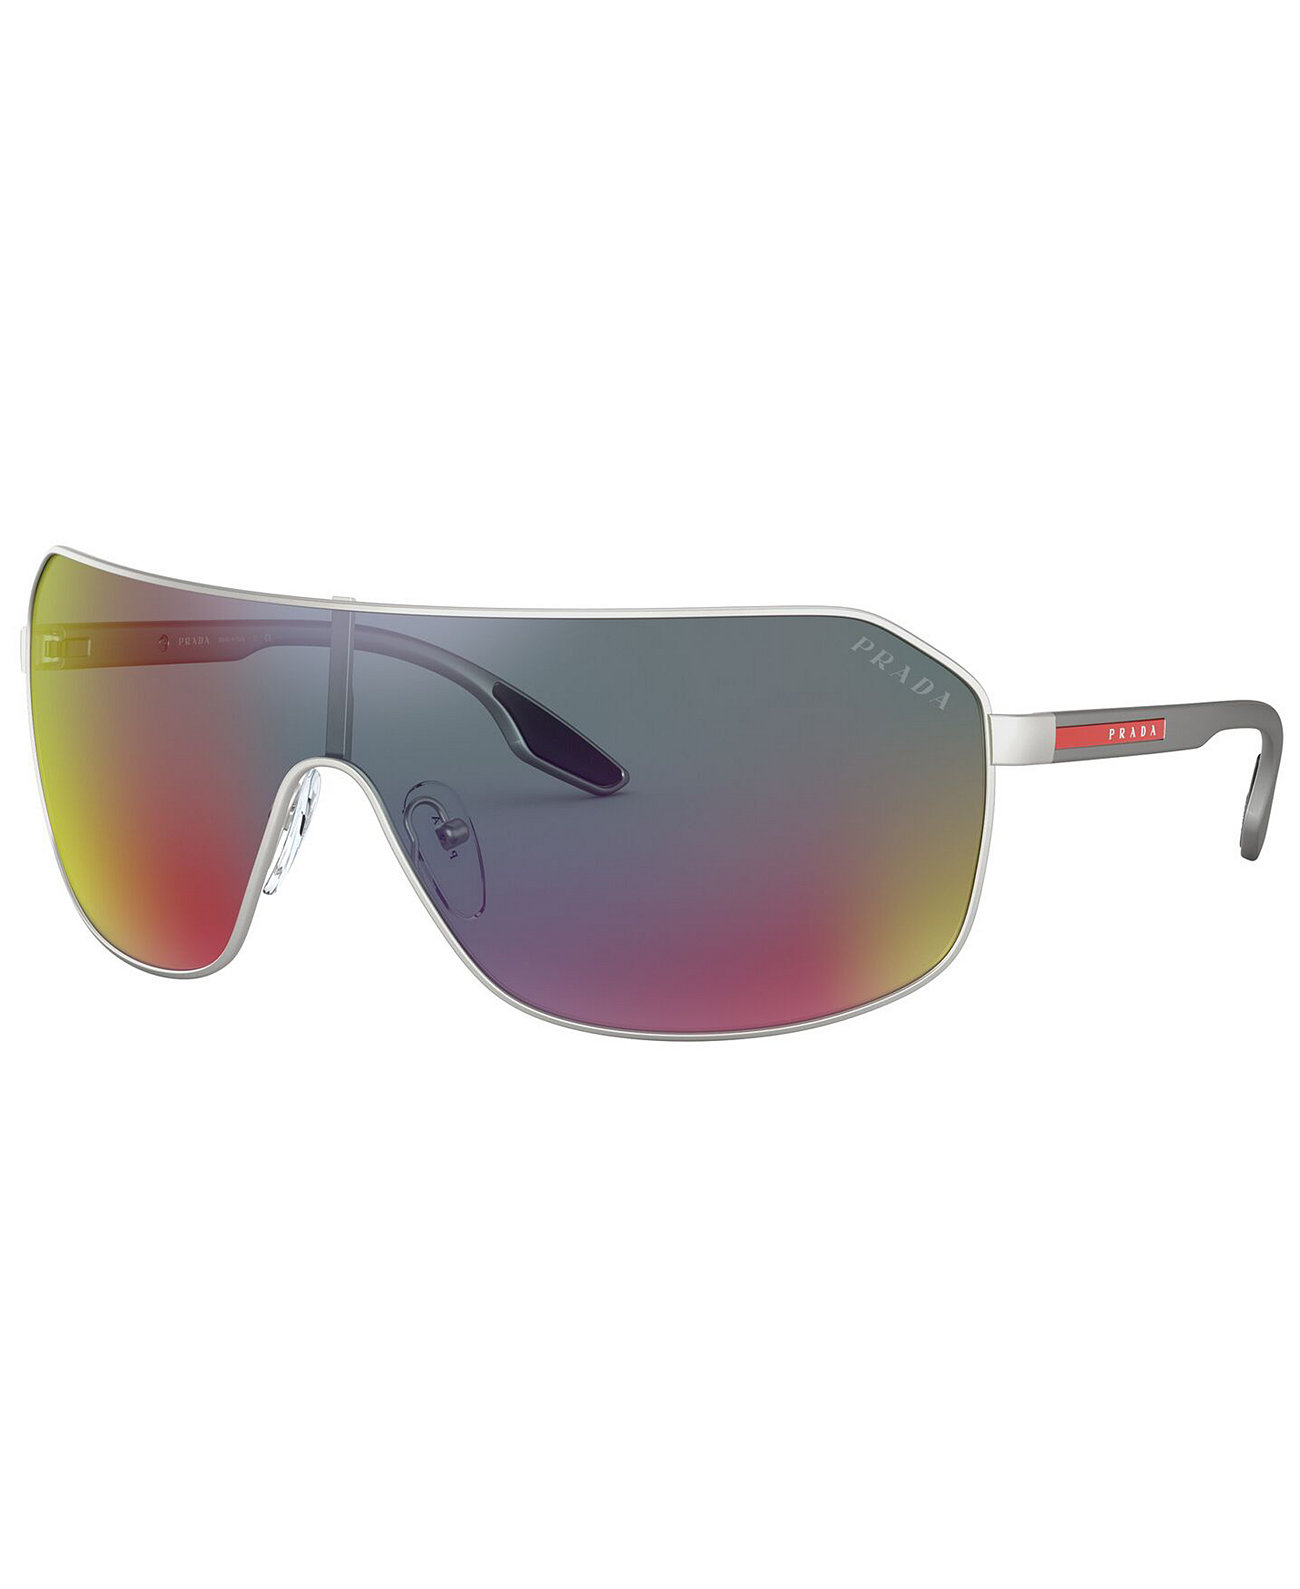 Солнцезащитные очки, PS 53VS 37 Prada Linea Rossa